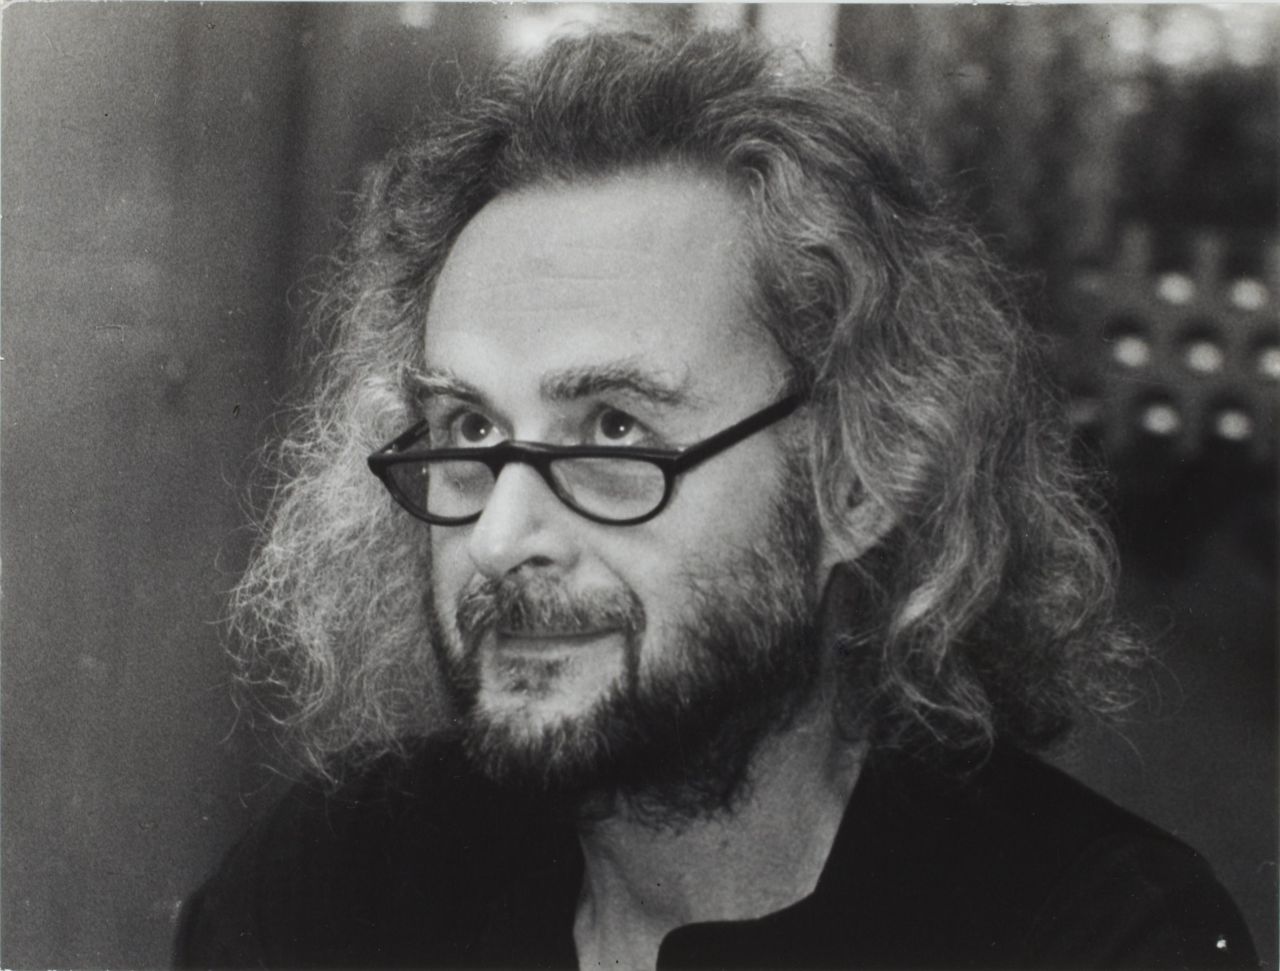 Porträtfoto des Schriftstellers und Drehbuchautors Ulrich Plenzdorf, 1988.